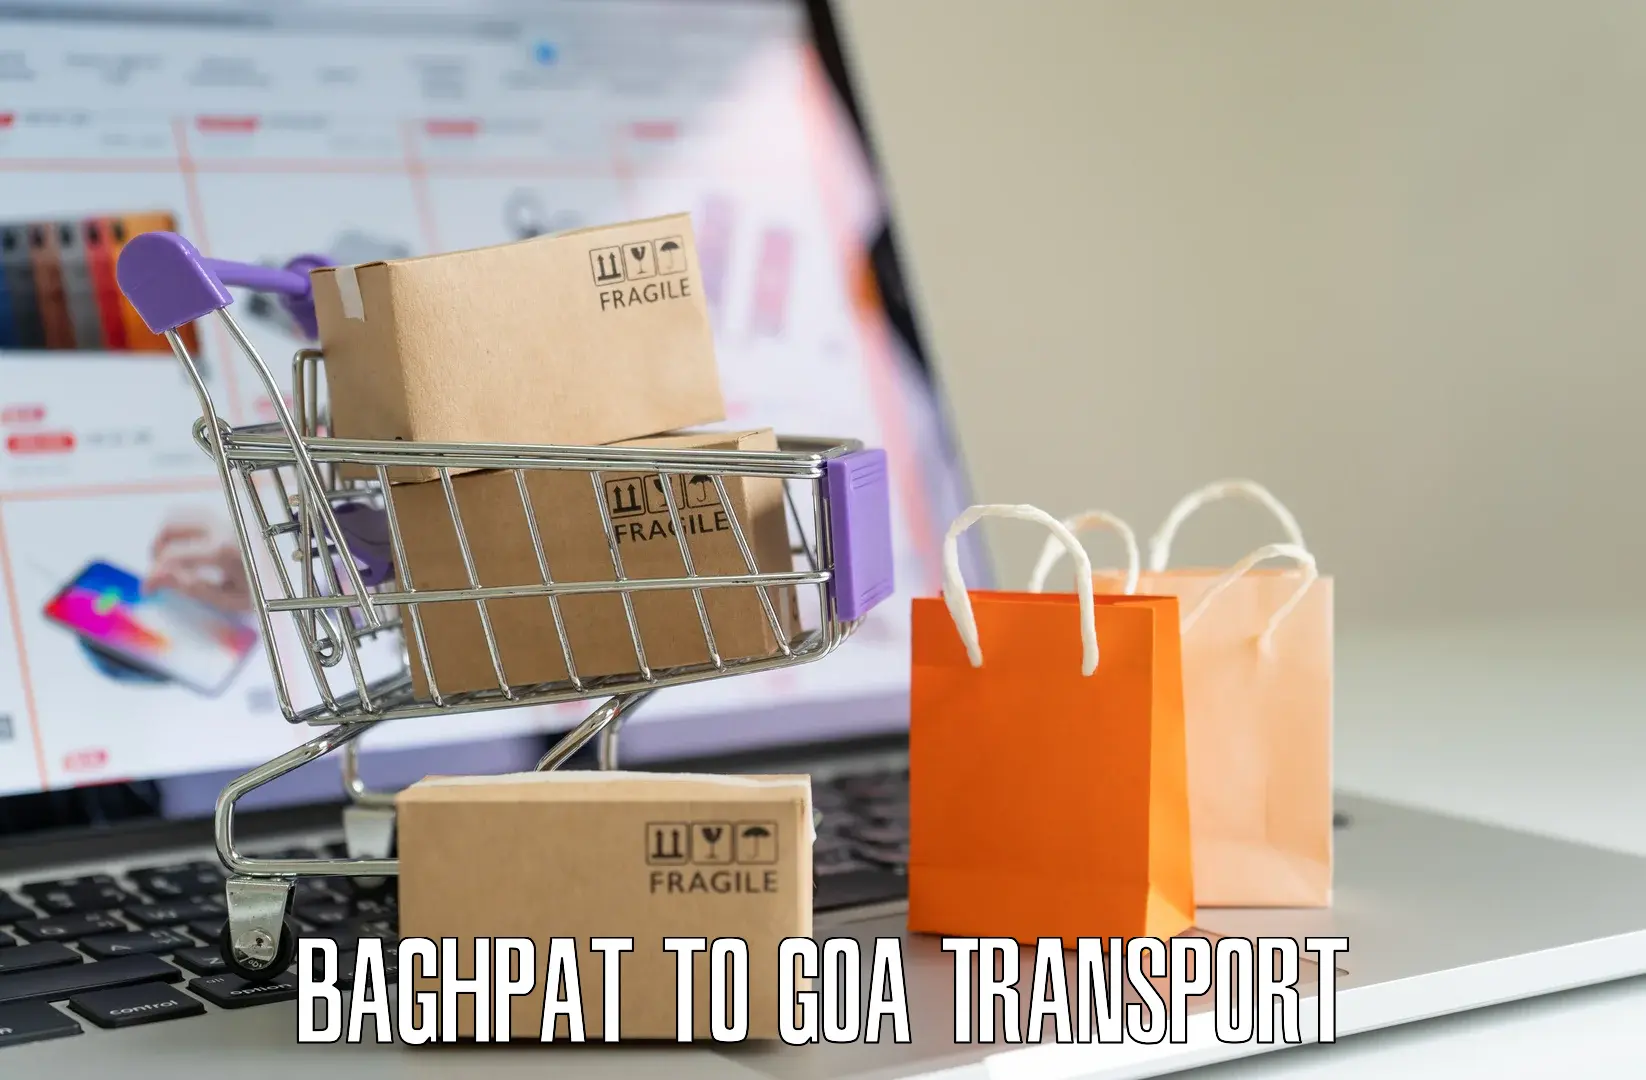 Commercial transport service Baghpat to Sanvordem